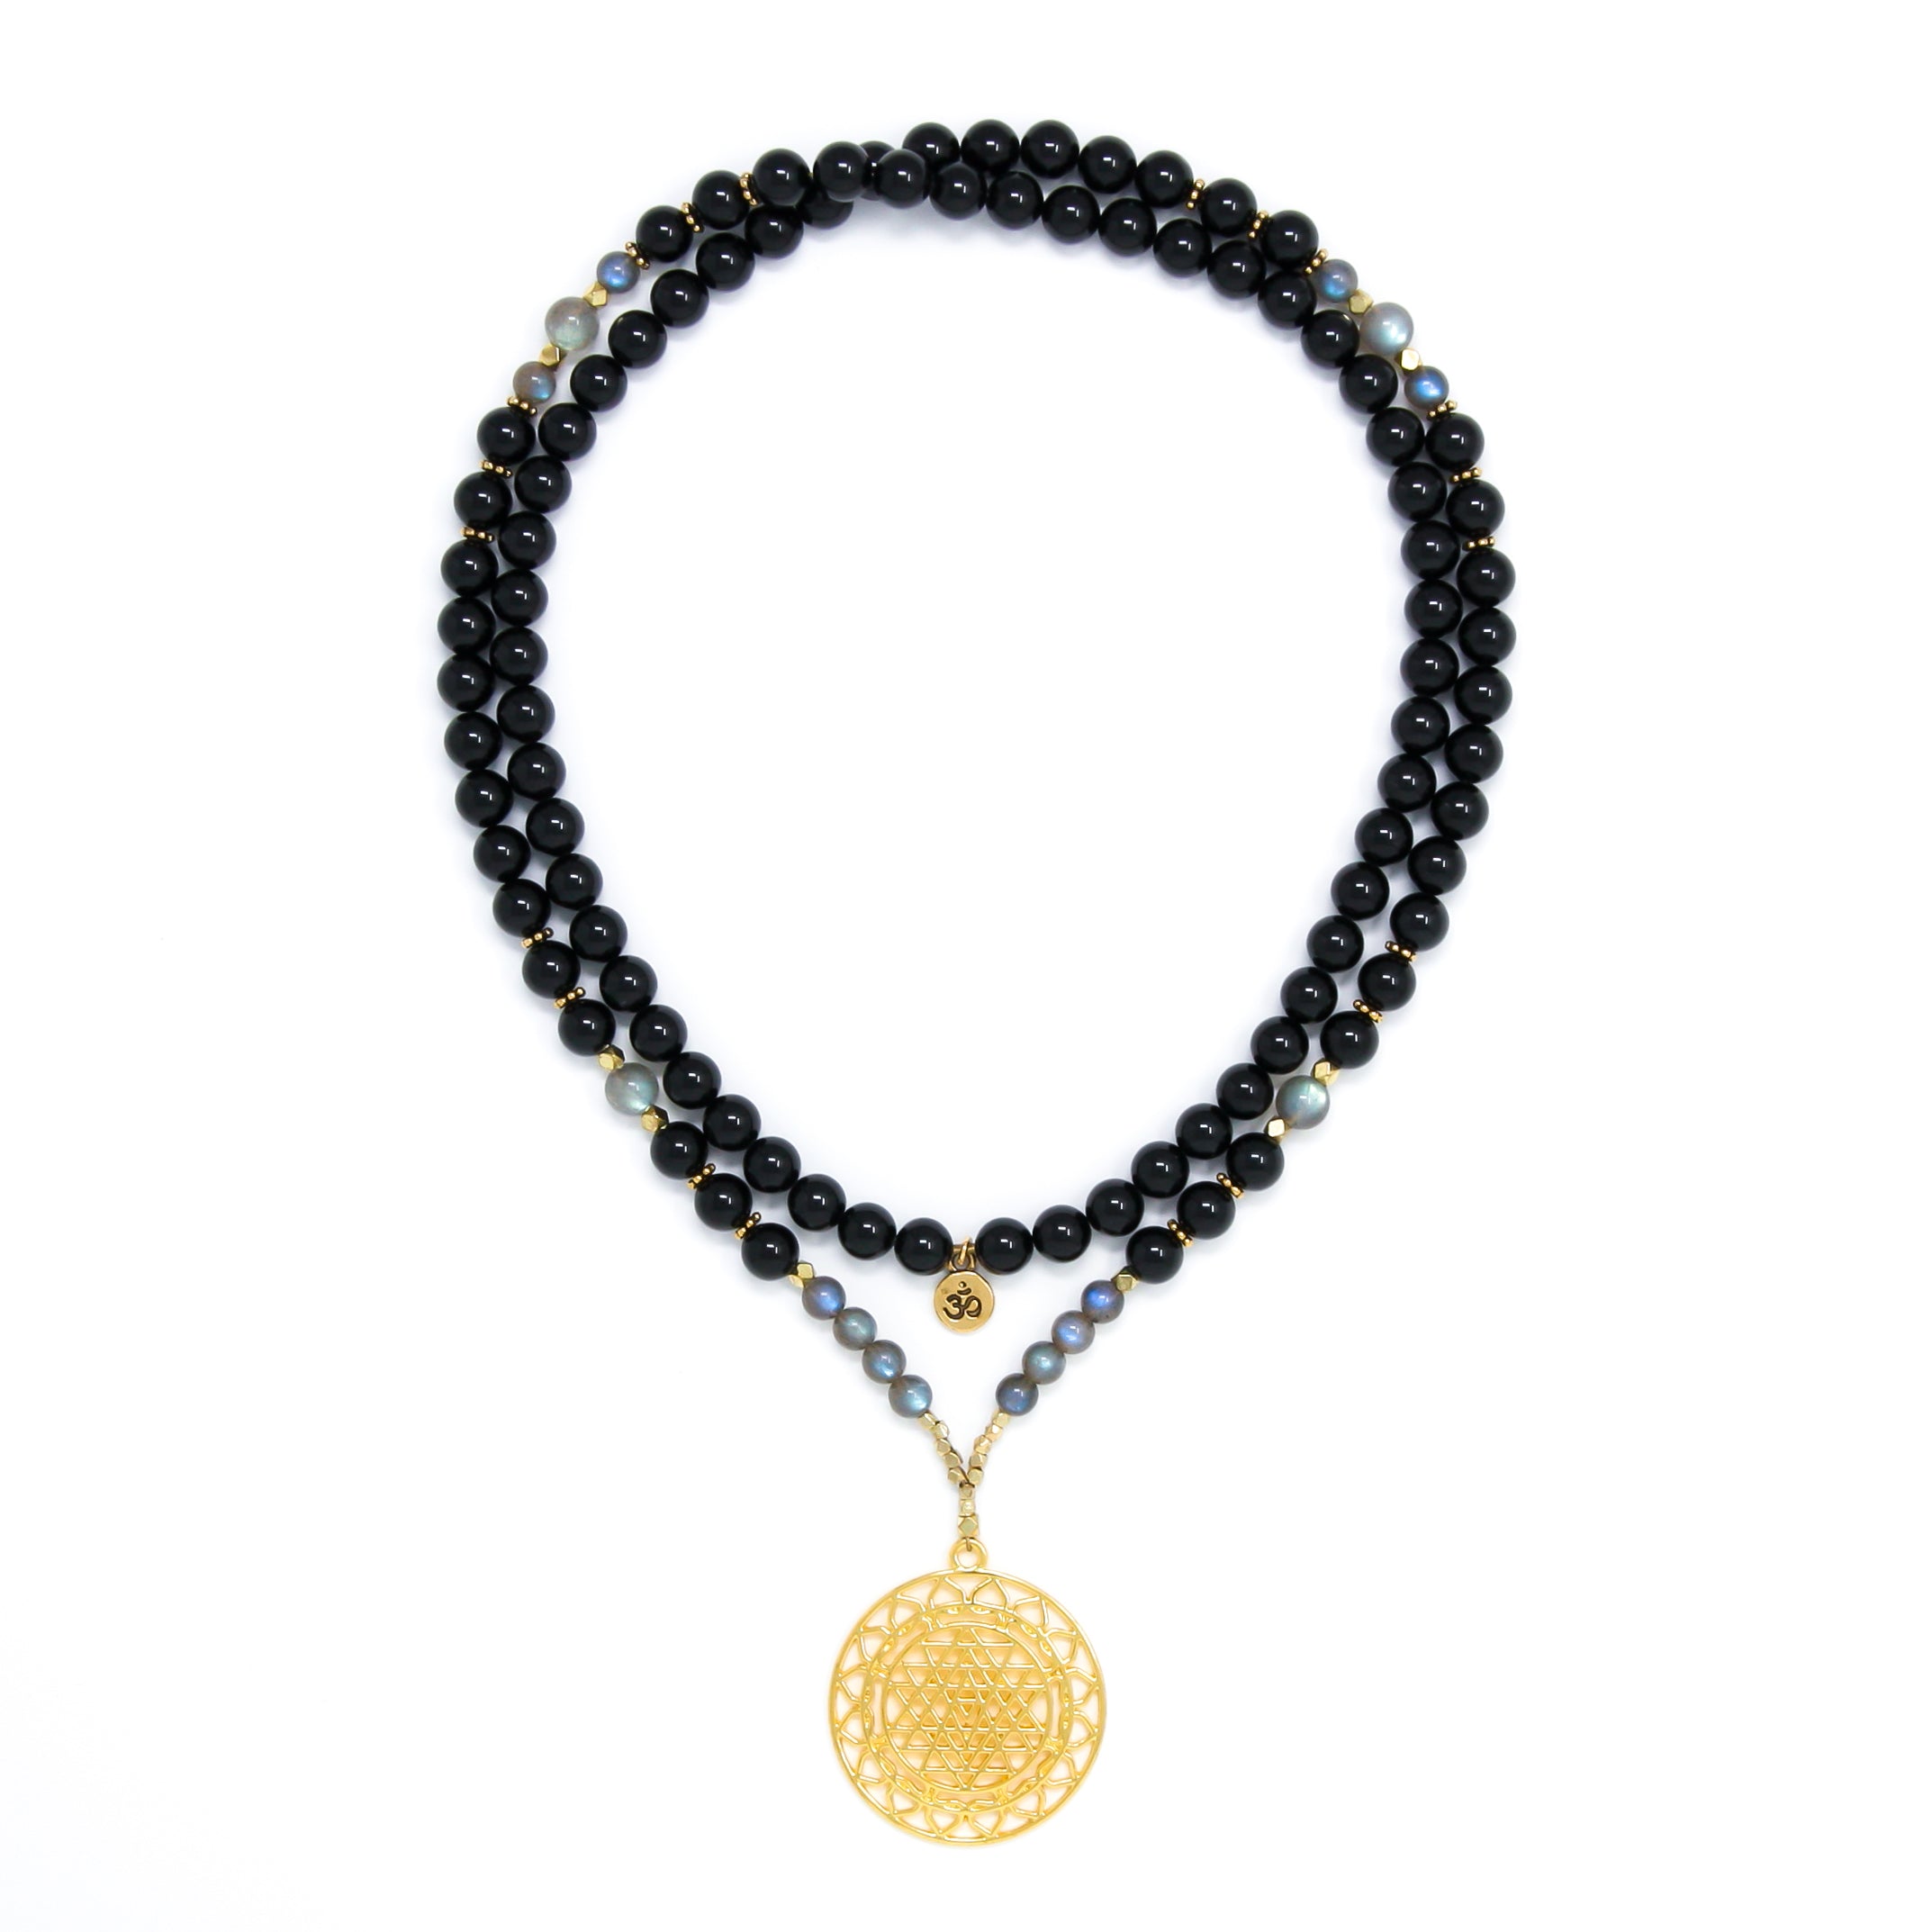 Black Tourmaline and Labradorite Mala Necklace with Gold Sri Yantra Pendant, black, gray and gold mala prayer beads, spiritual jewelry